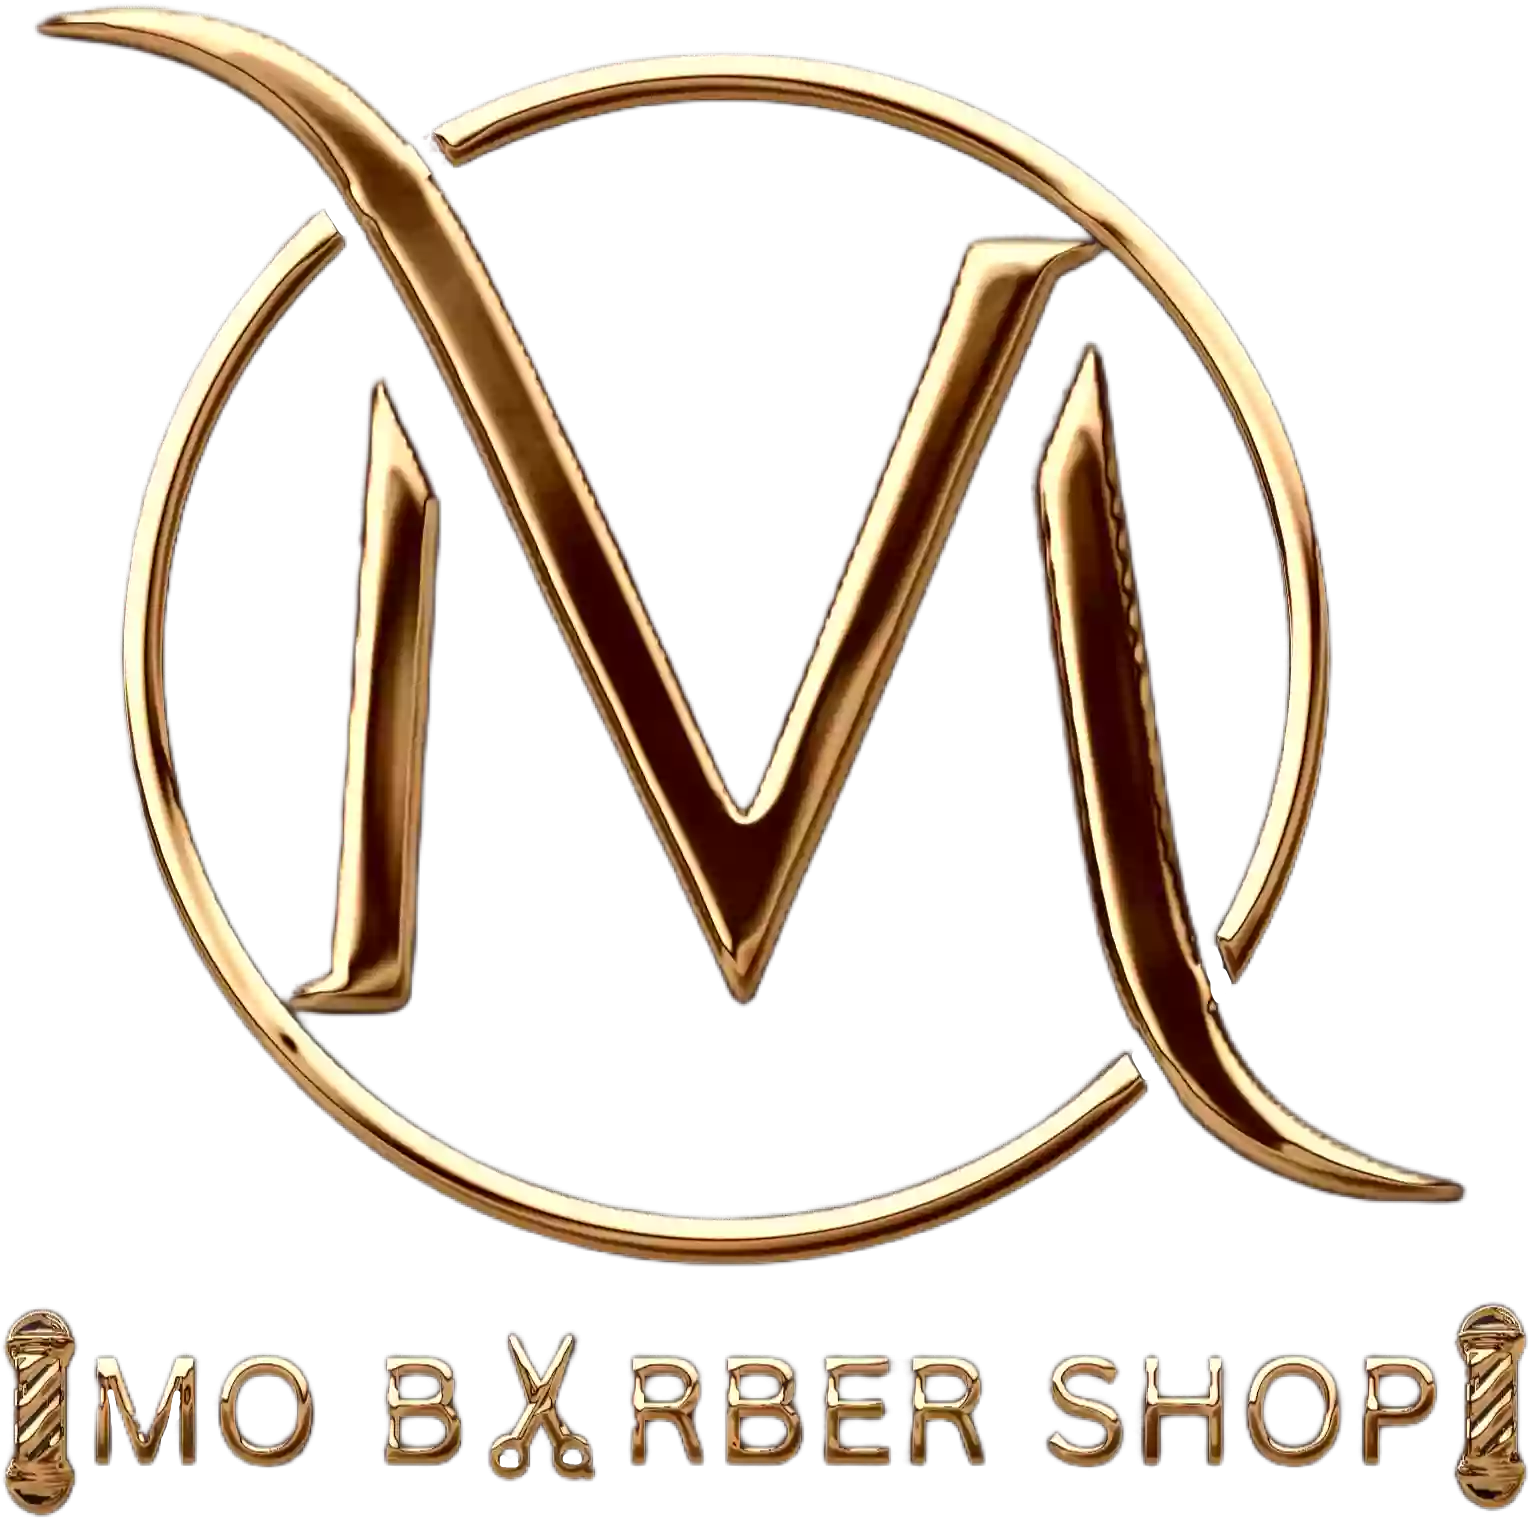 Mo Barber Shop